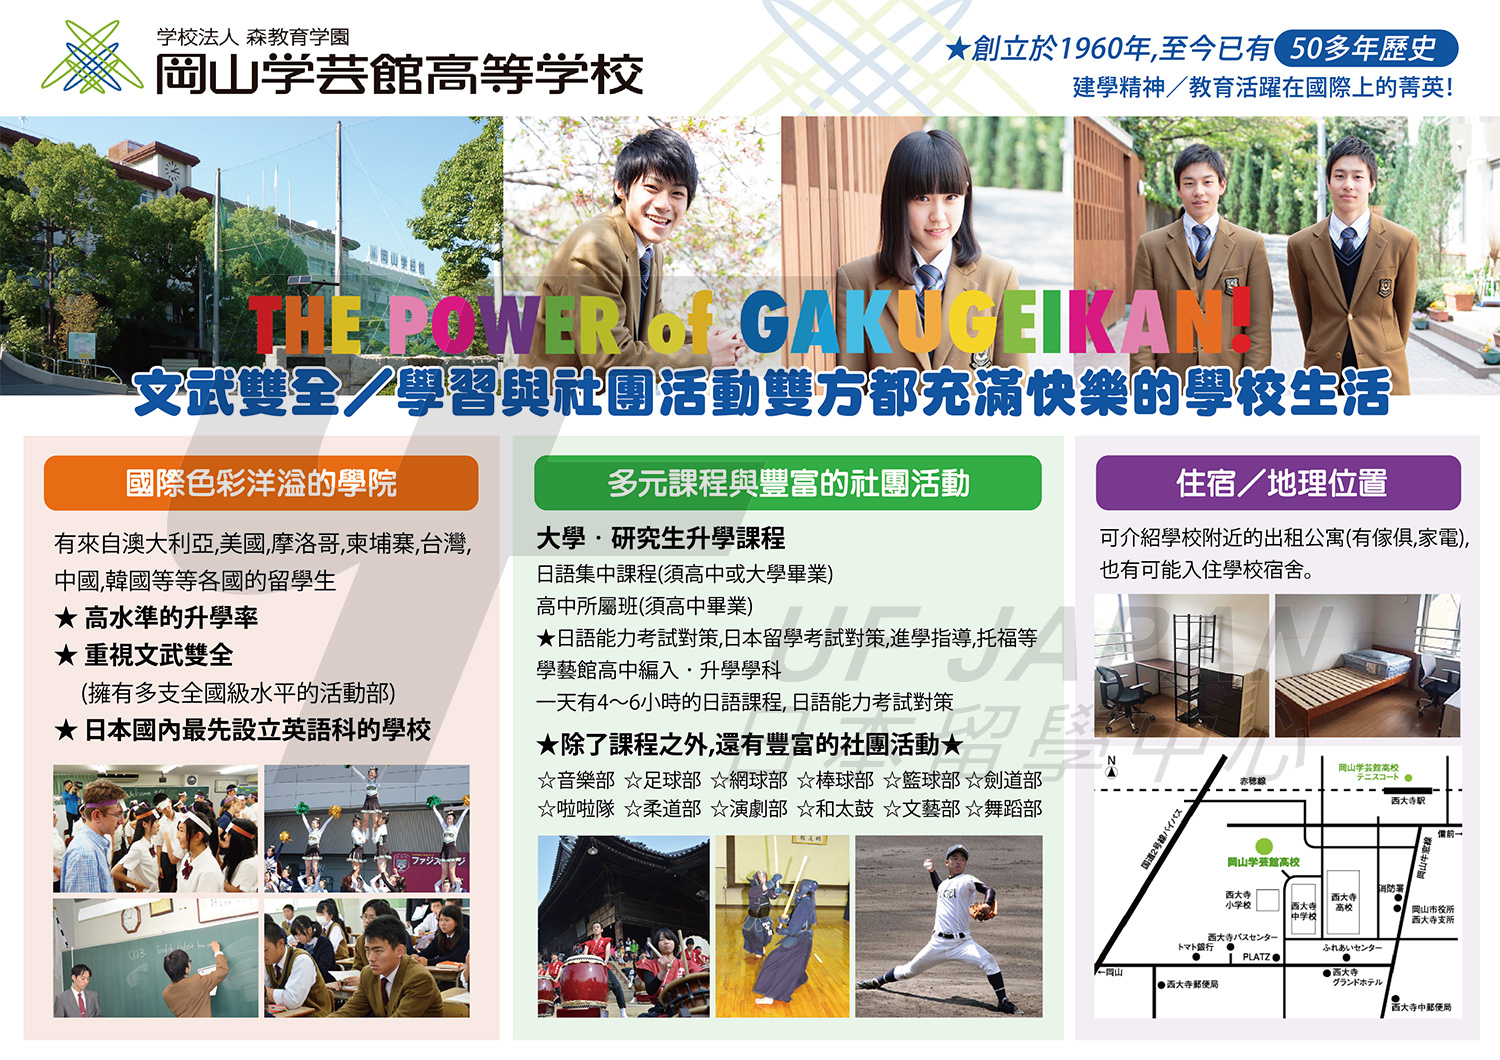 2016日本留學展參展單位-福岡國際學院